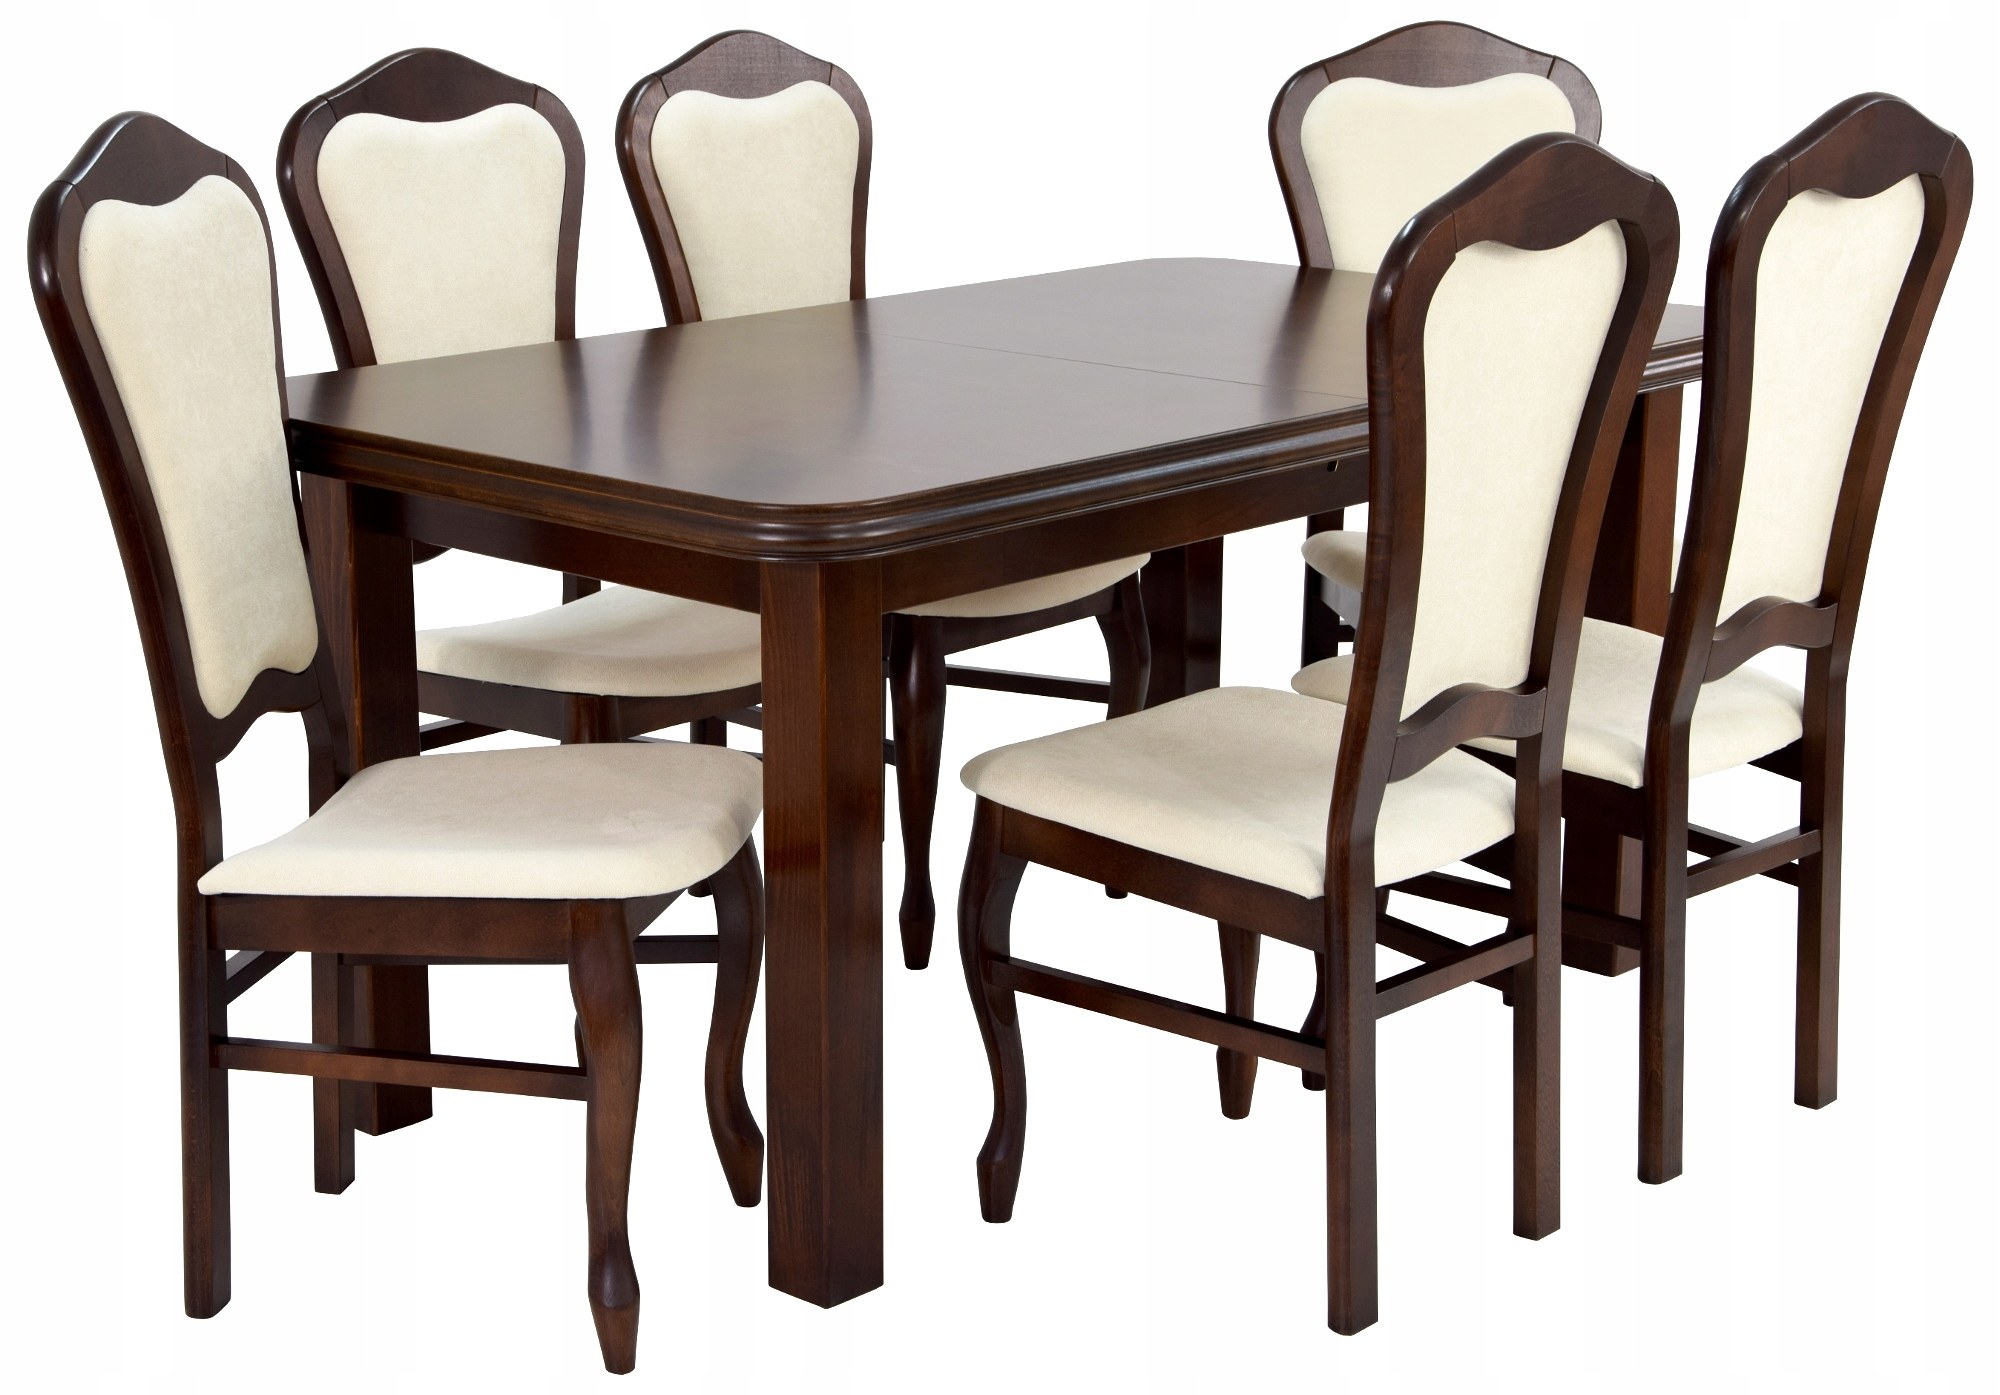 Комплект 6 стульев. Мебель stol stul. Кенг Макон стулья. Кухонный стол и стулья. Комплект стол и стулья для гостиной.